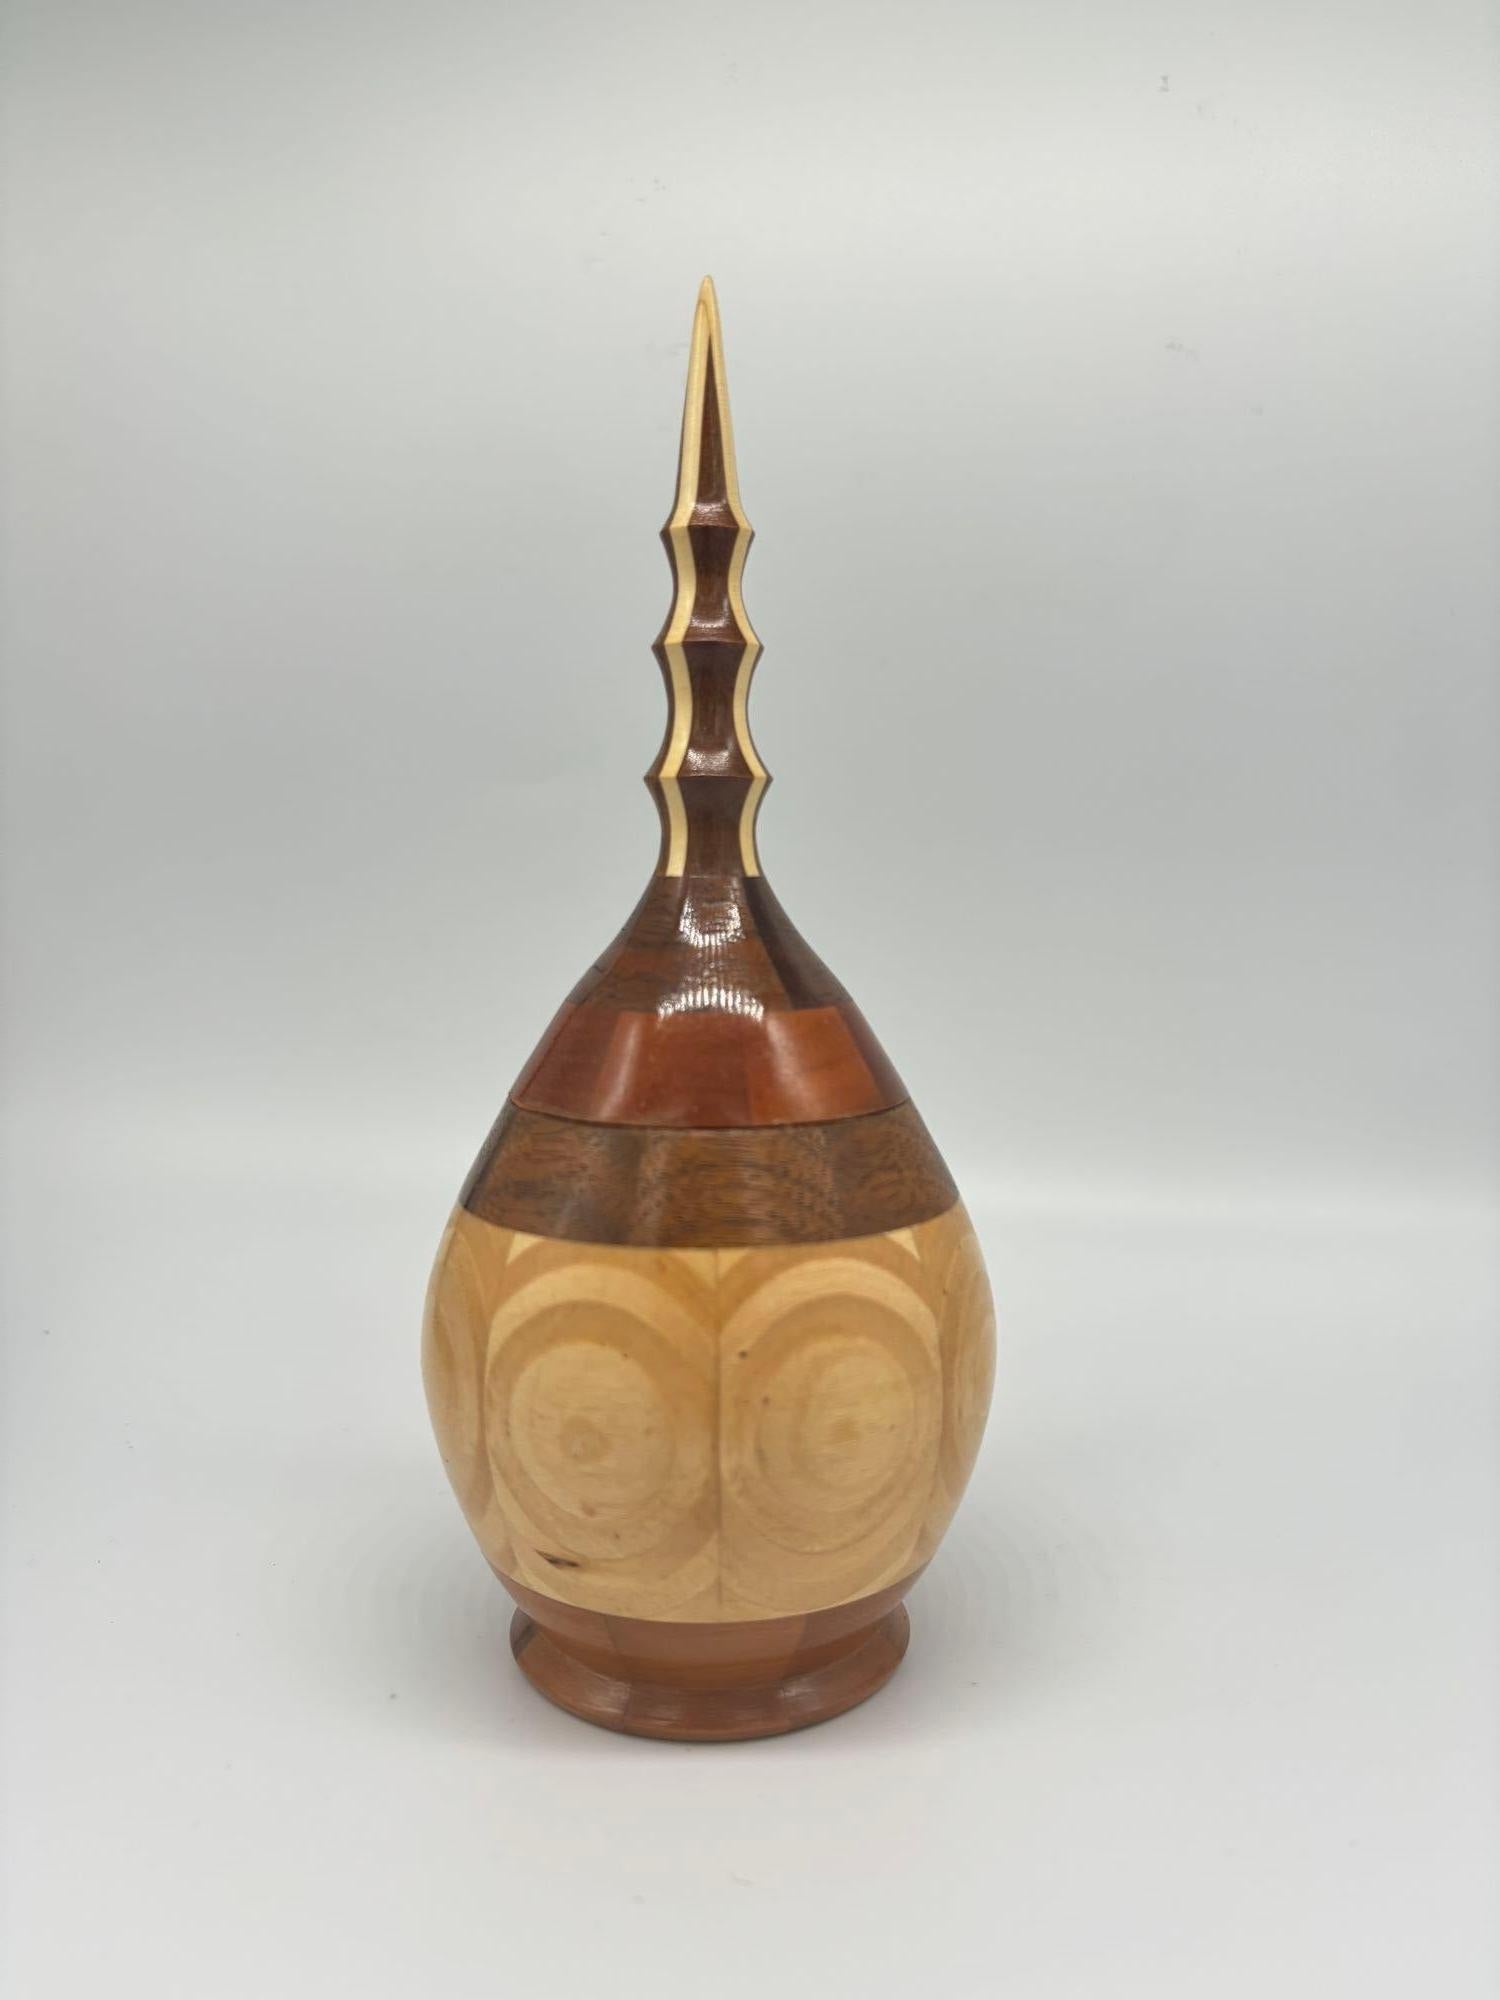 Voici un superbe vase en forme de poire avec couvercle, incrusté de marqueterie sculptée à la main. Fabriqué avec précision et soin, ce récipient exquis présente des incrustations de marqueterie complexes, ajoutant une touche artistique et élégante